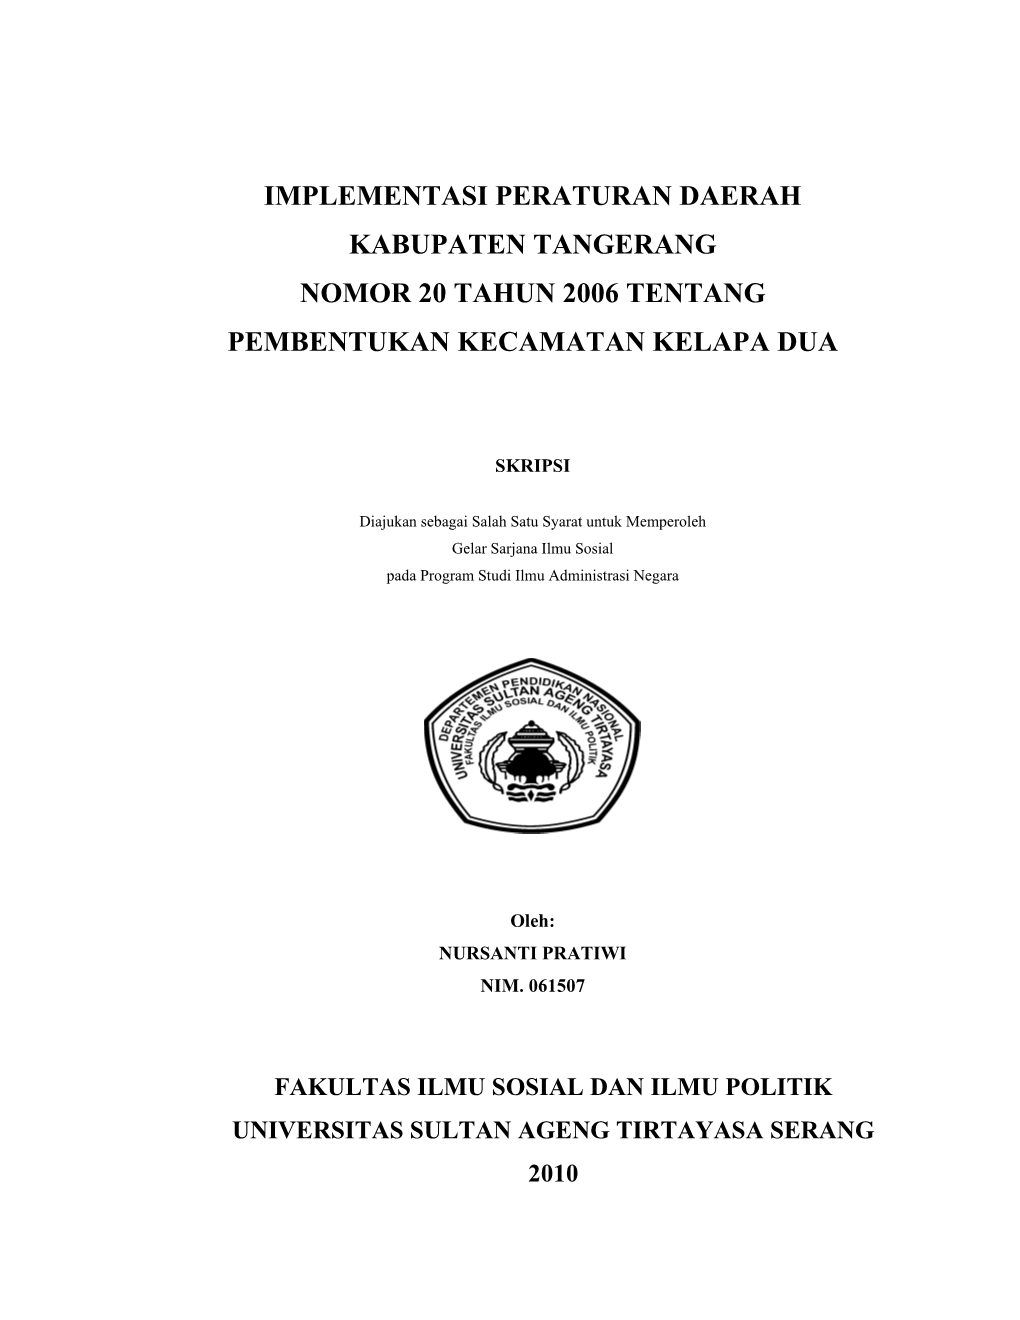 Implementasi Peraturan Daerah Kabupaten Tangerang Nomor 20 Tahun 2006 Tentang Pembentukan Kecamatan Kelapa Dua